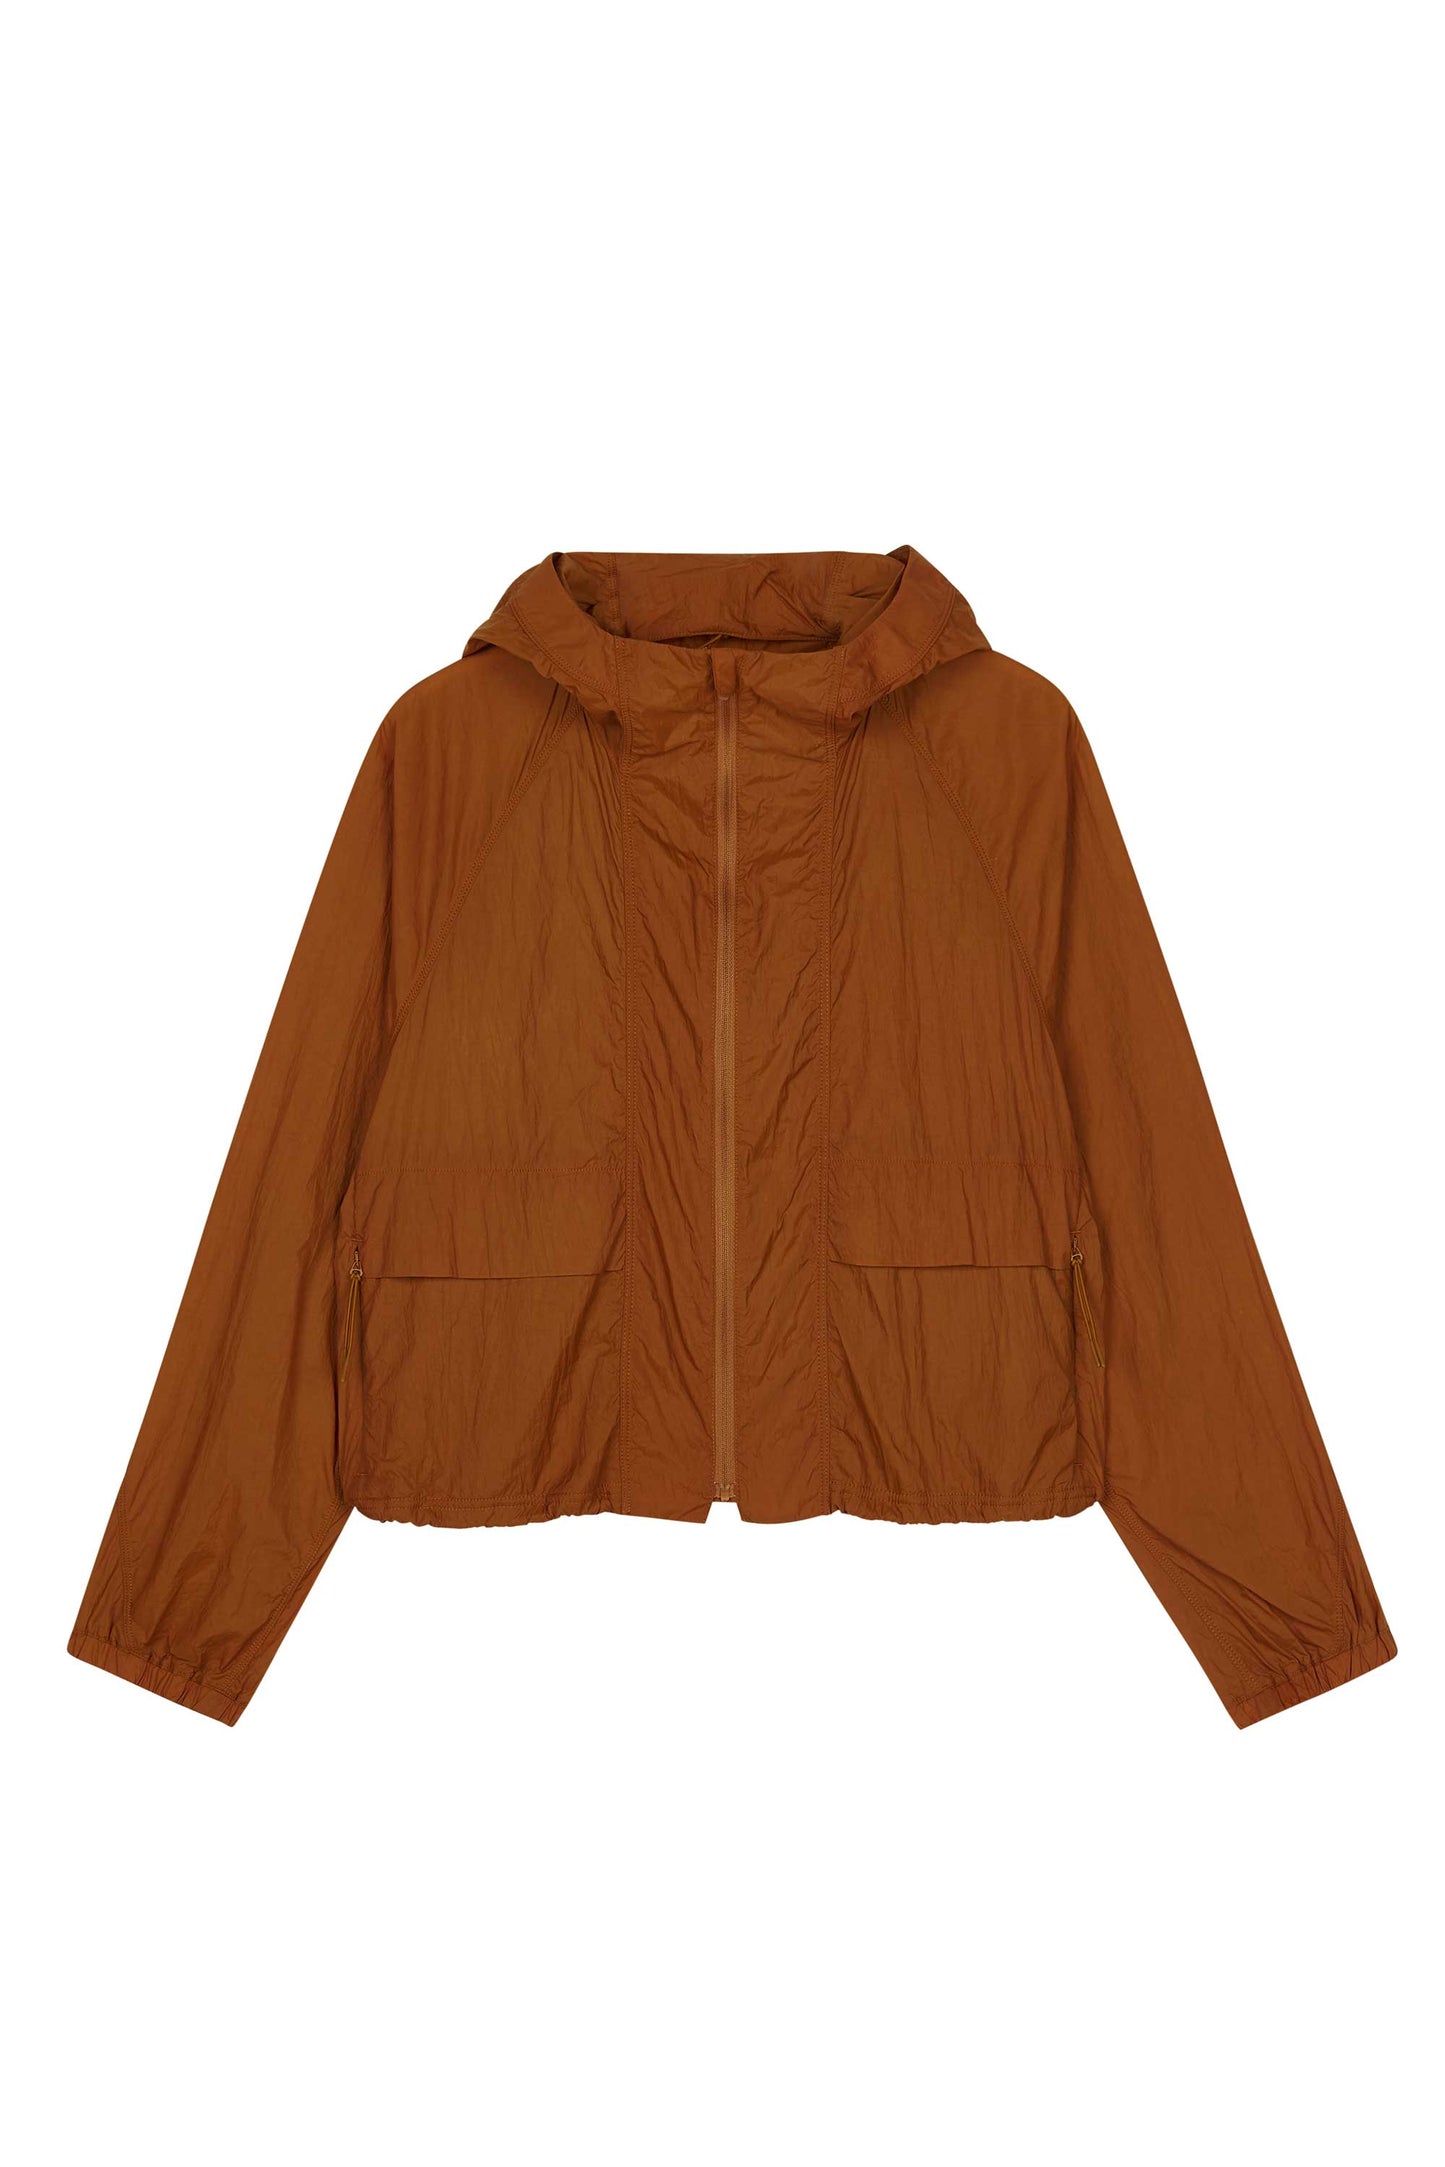 brown jacket